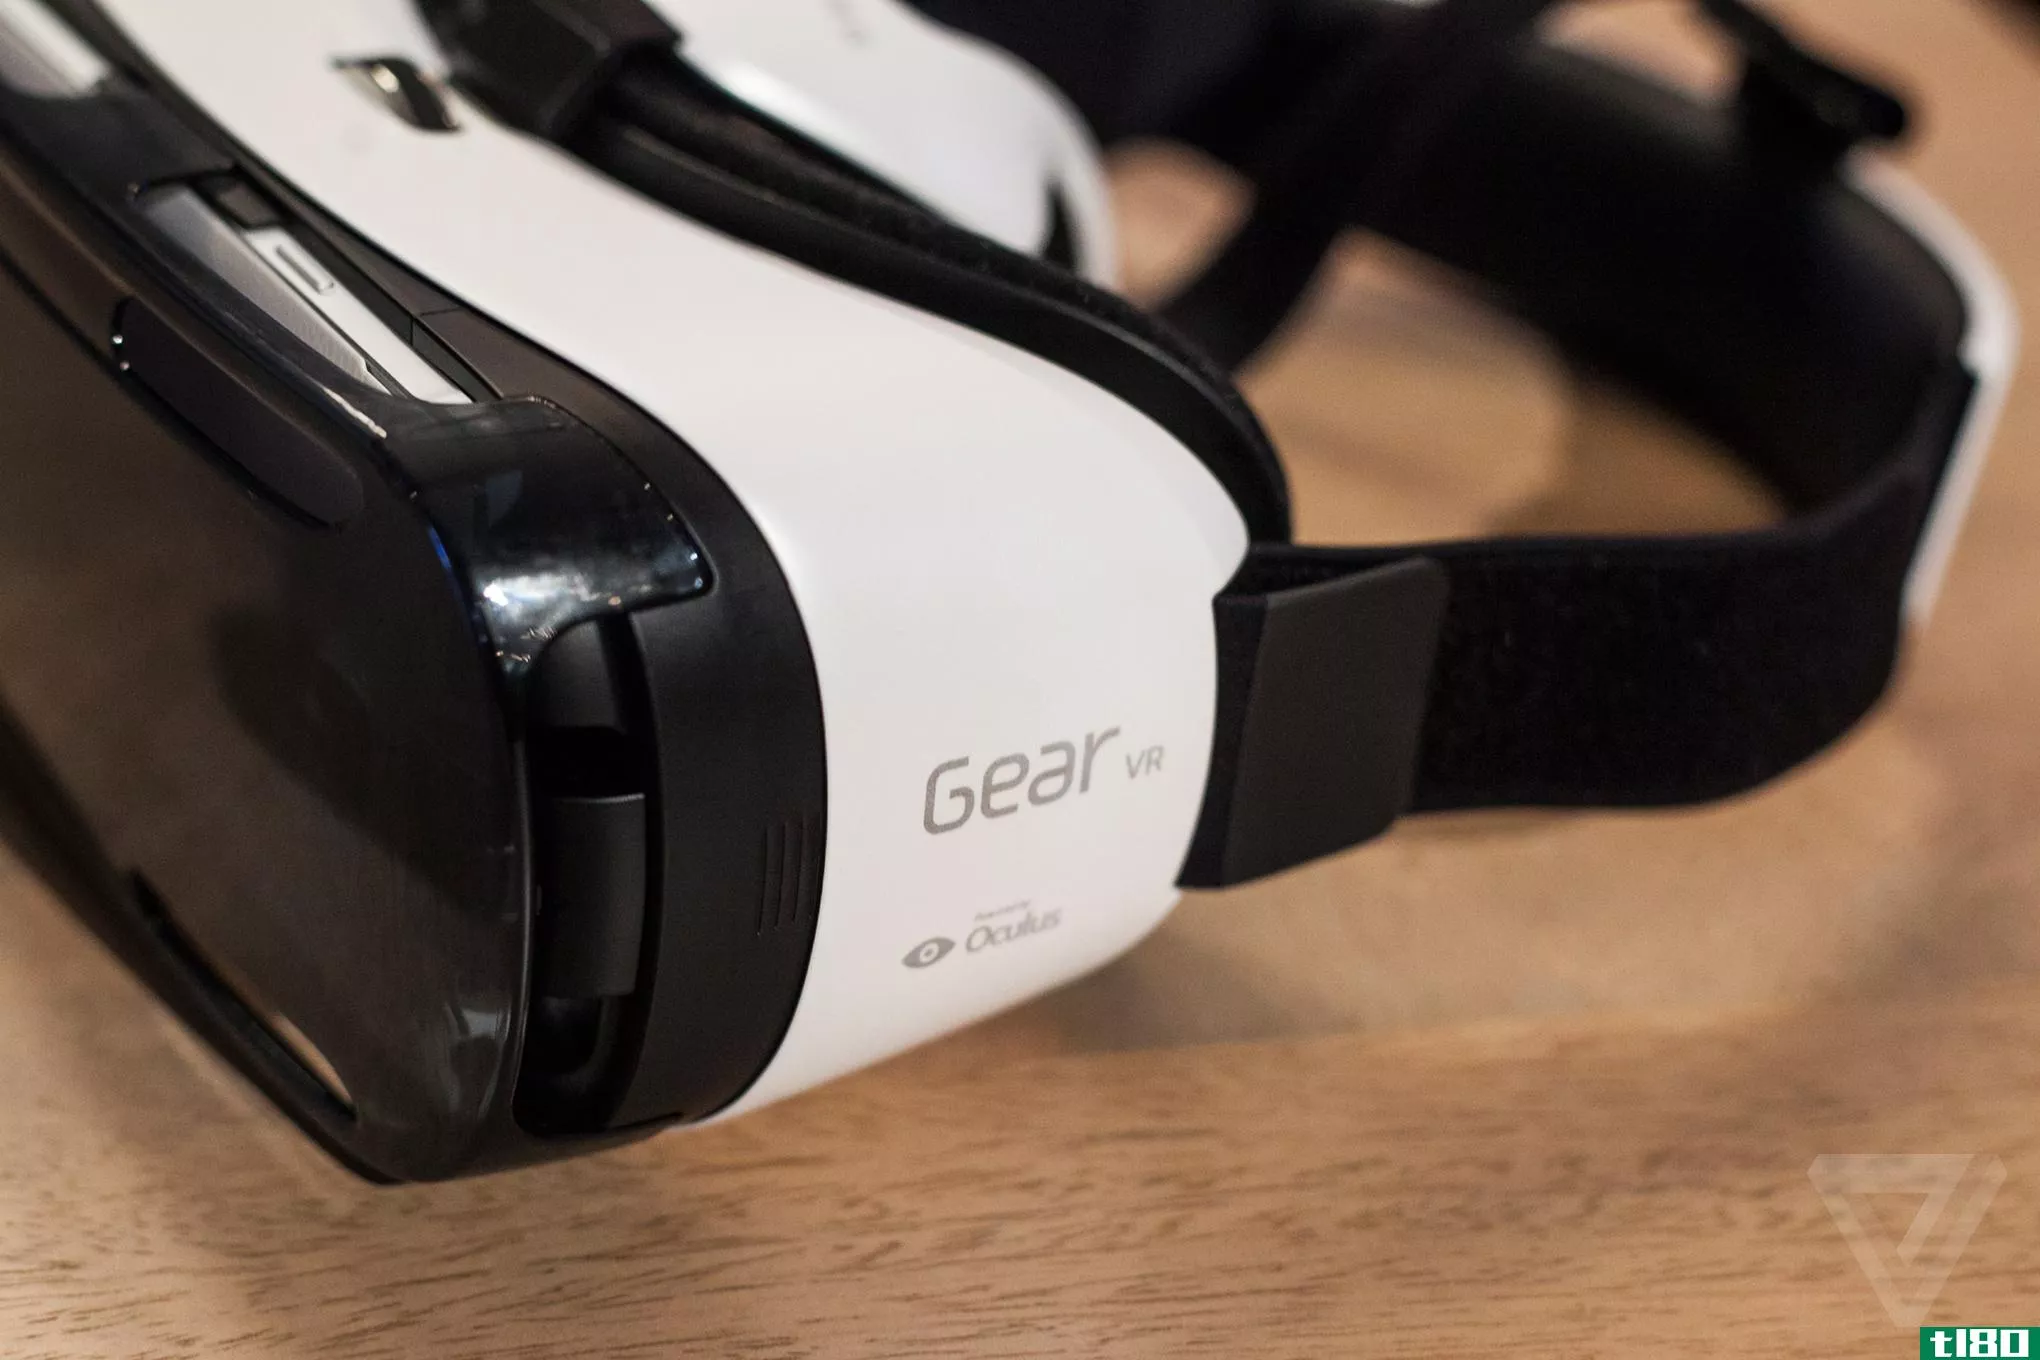 三星的gear vr是第一款你可能真的想买的虚拟现实耳机